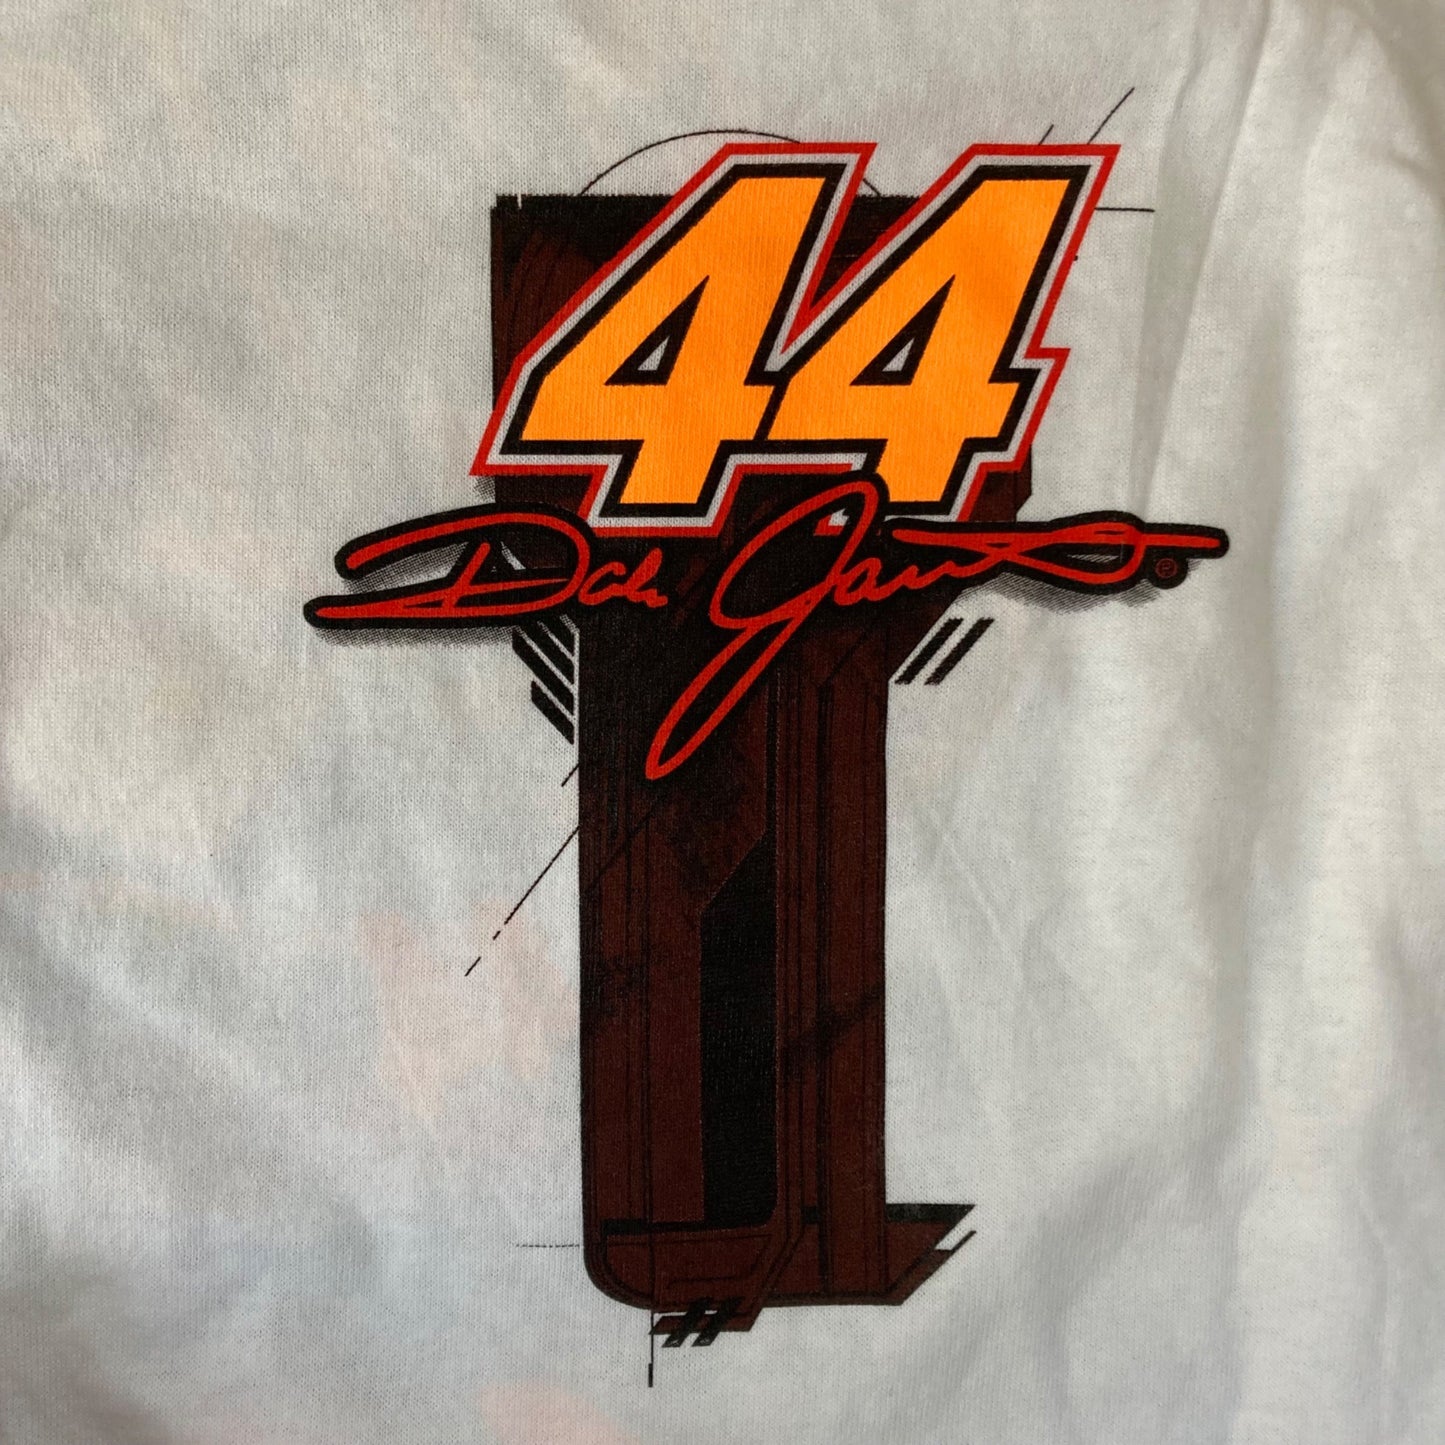 Vintage Dale Jarrett #44 NASCAR UPS Racing T-Shirt Size 2XL NEW w/ Tags!